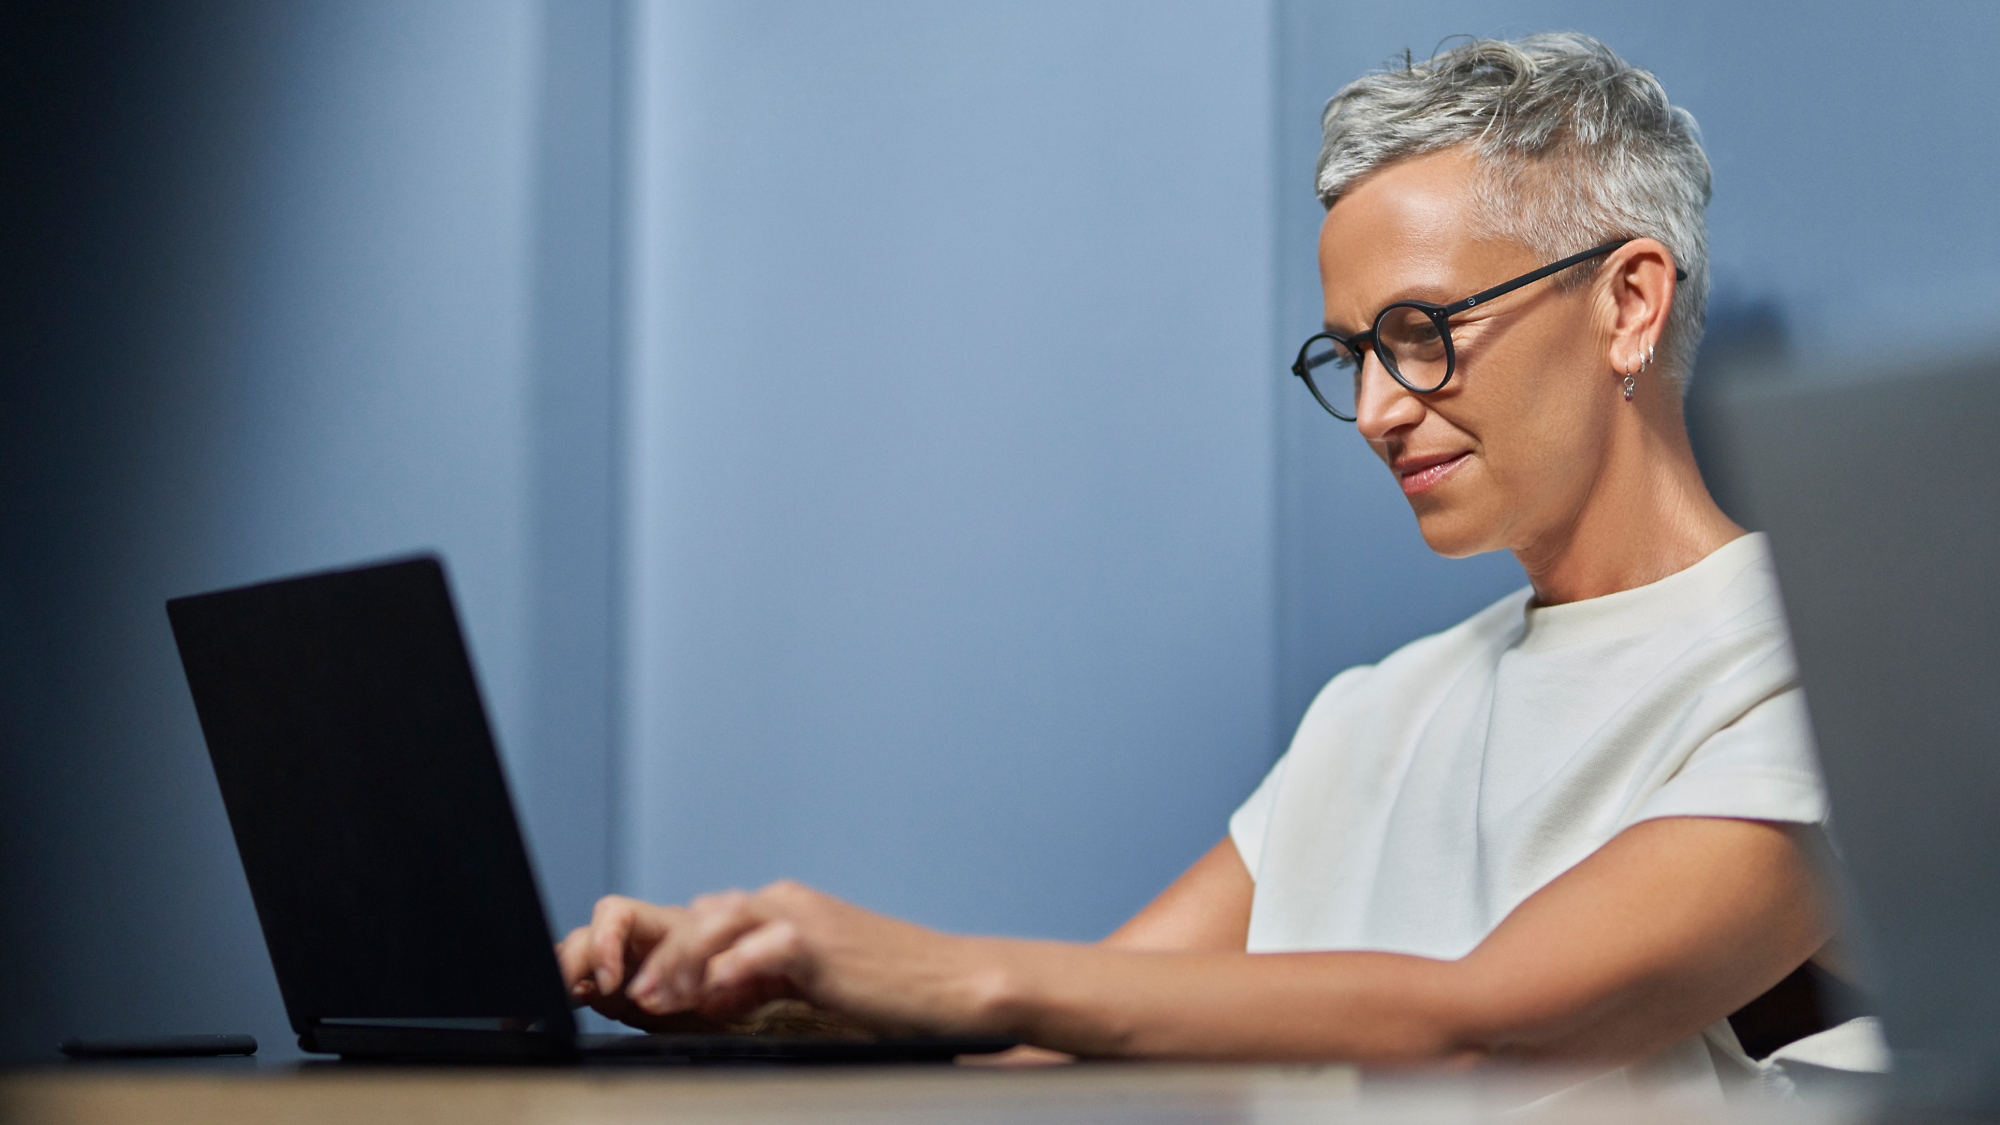 אישה מבוגרת עם שיער אפור קצר מחייכת ועובדת על מחשב נישא בסביבת משרד מודרני.